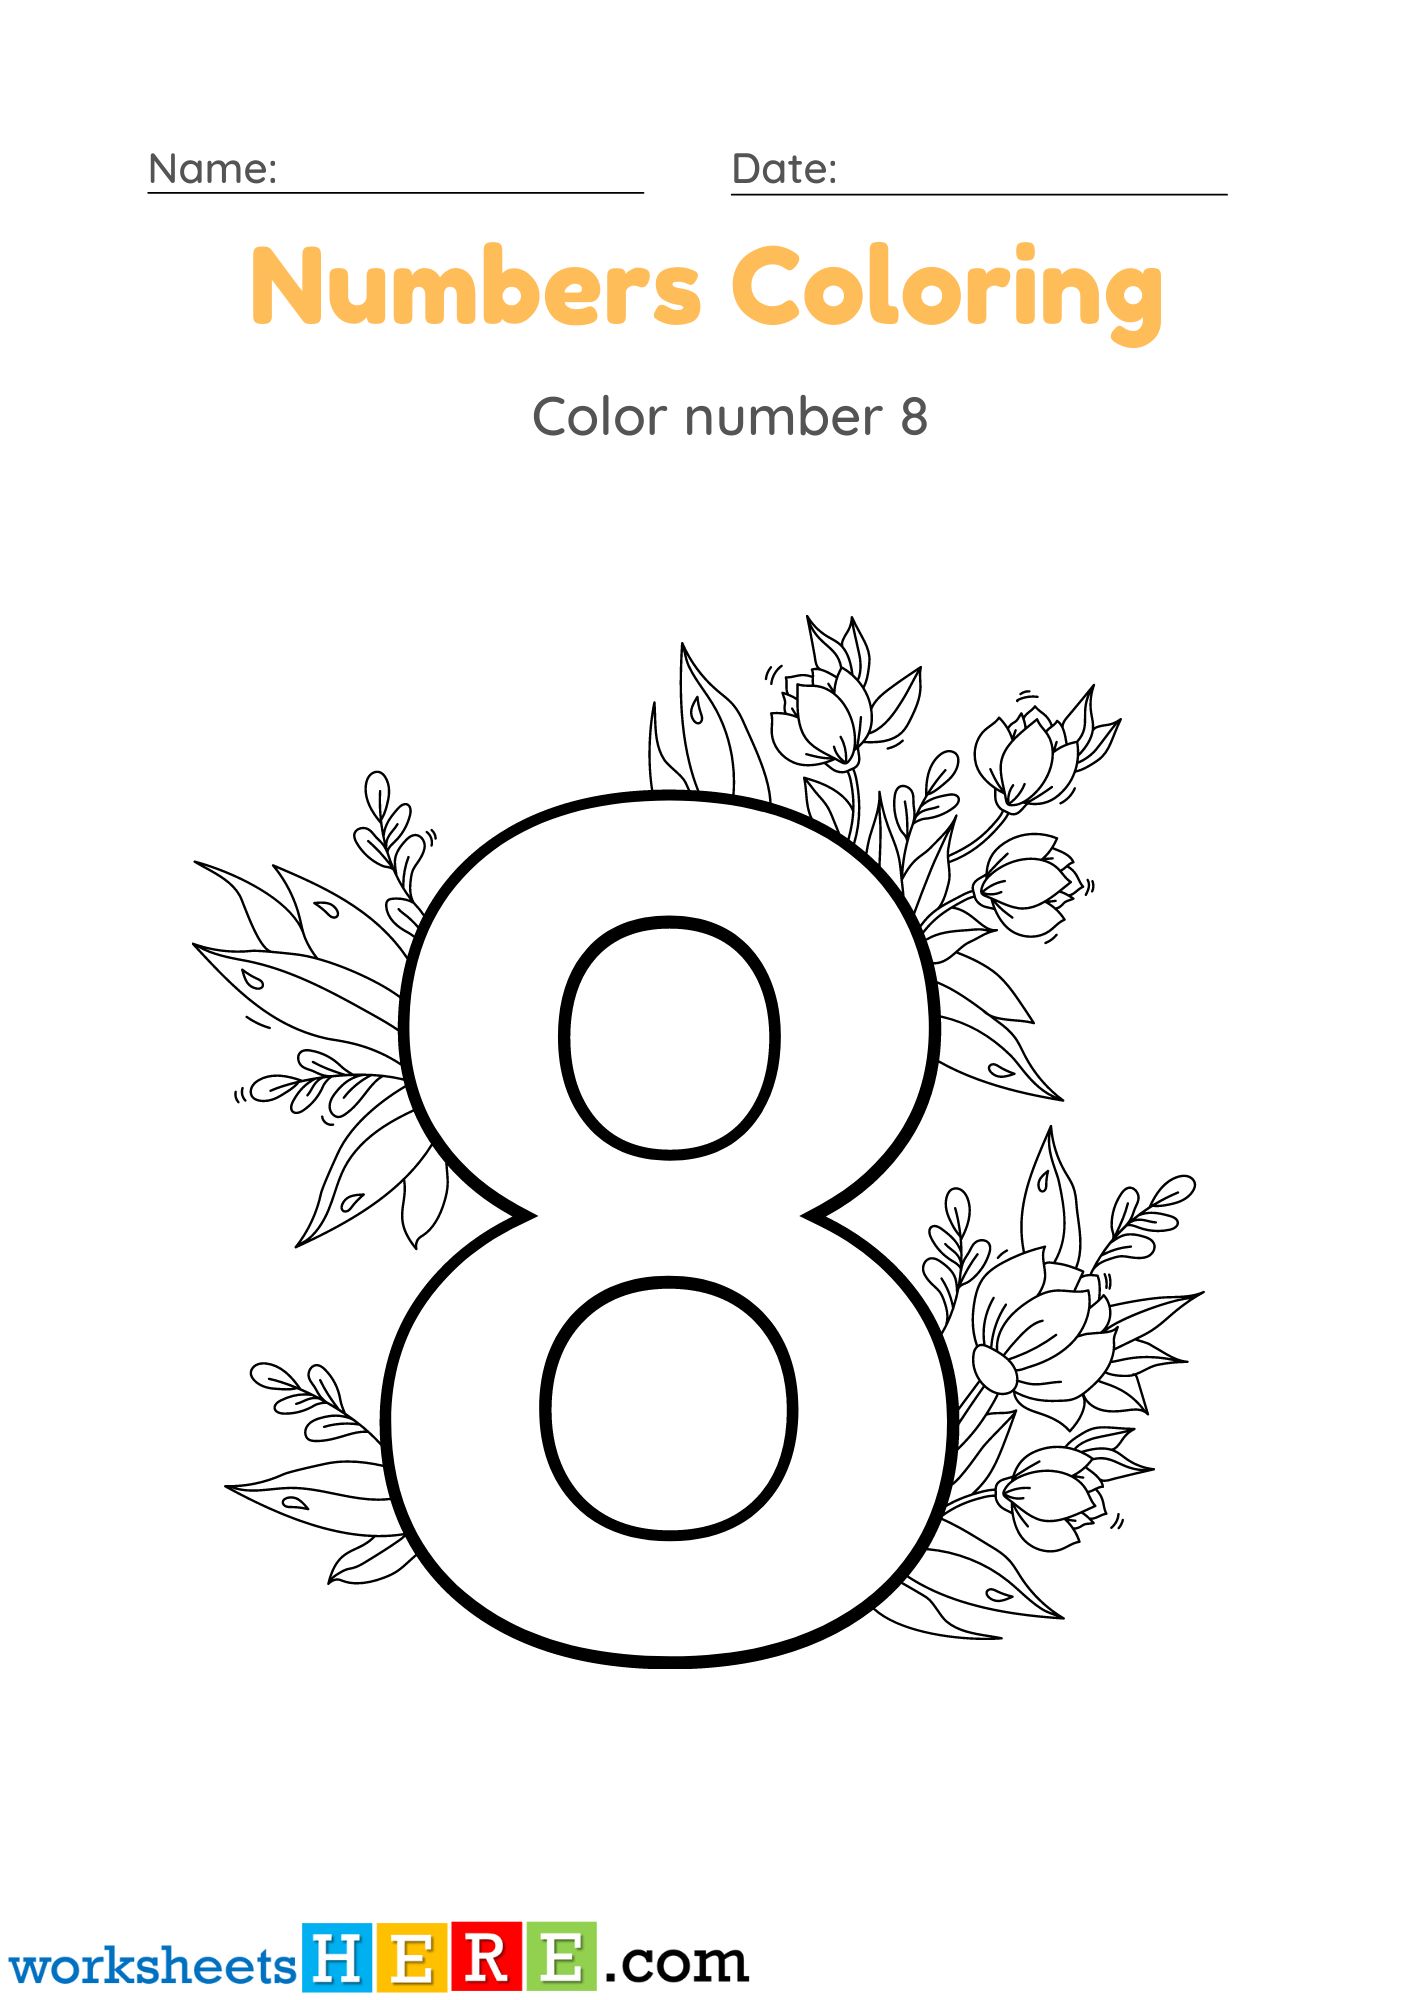 Numbers Coloring Activity, Color Number 8 PDF Worksheet For Kindergarten